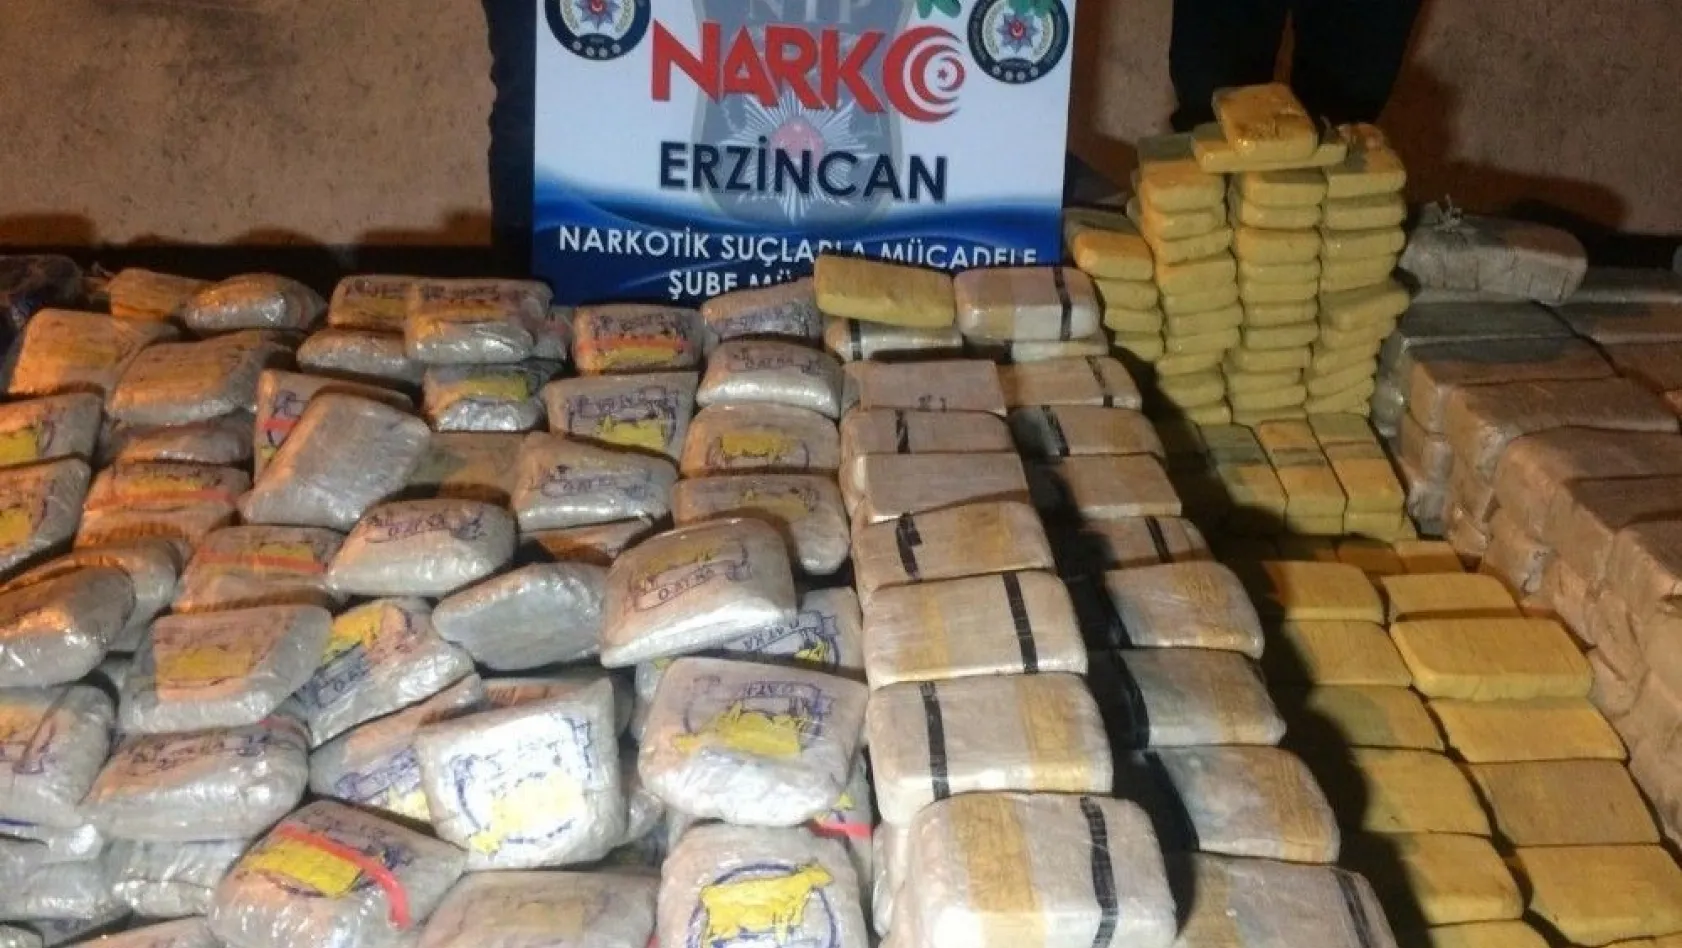 Erzincan'da yaklaşık 1 ton eroin ele geçirildi
